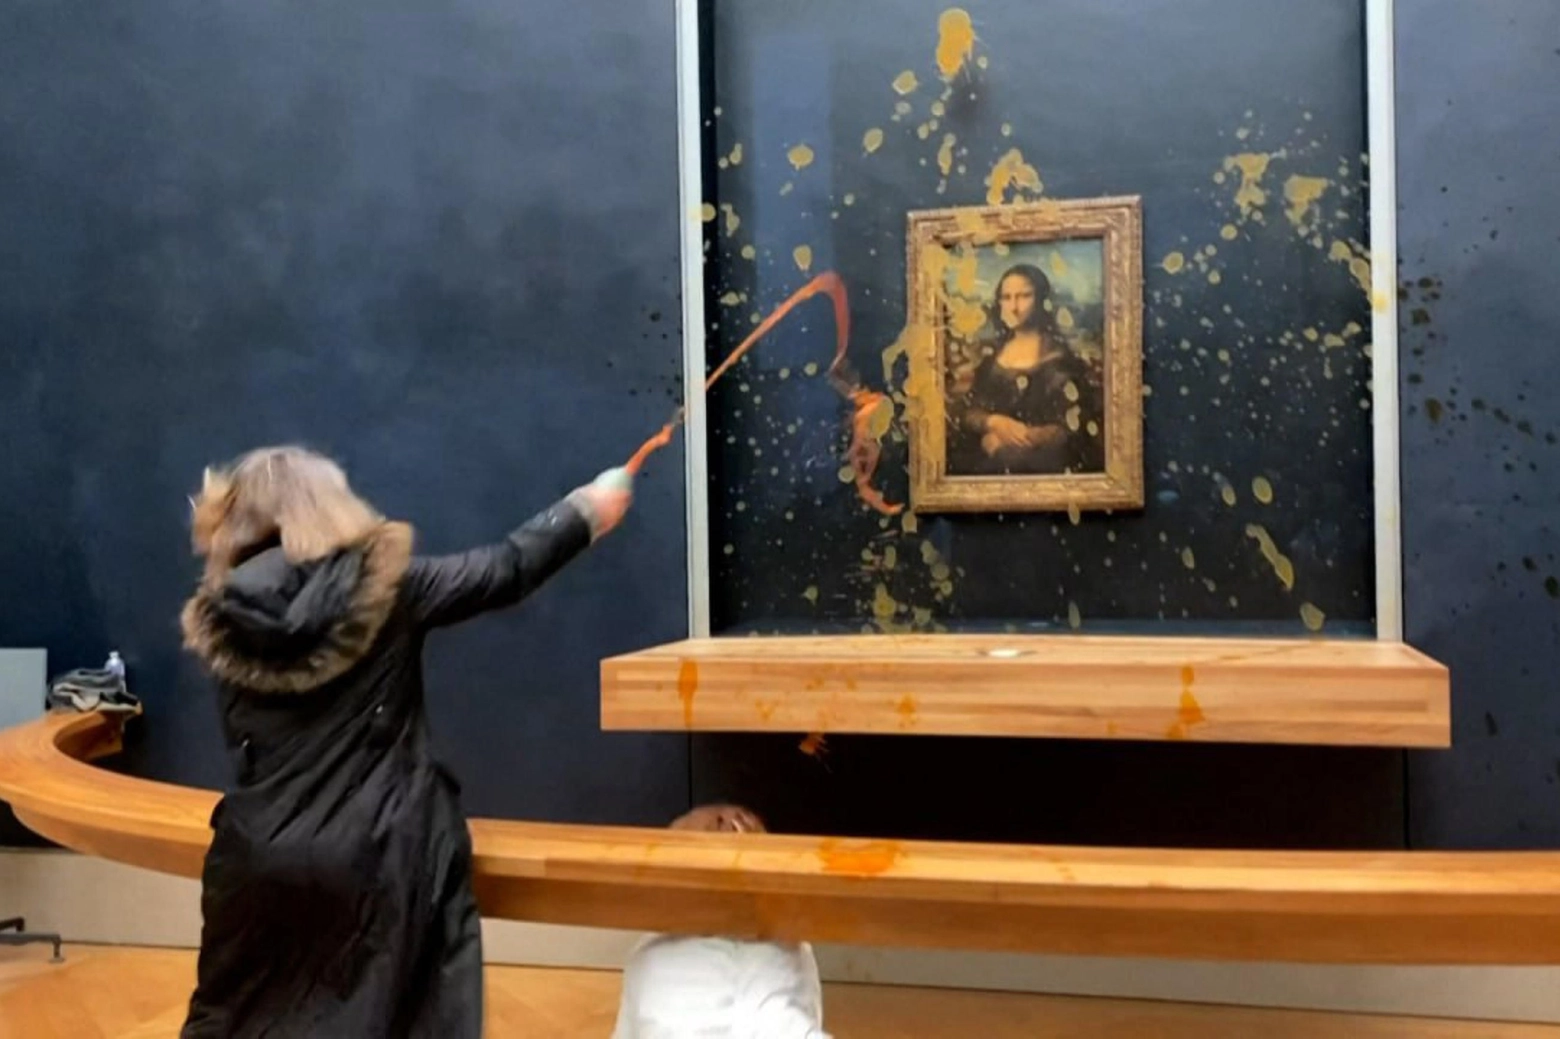 Una ambientalista lancia della zuppa contro il vetro che custodisce la Gioconda al Louvre